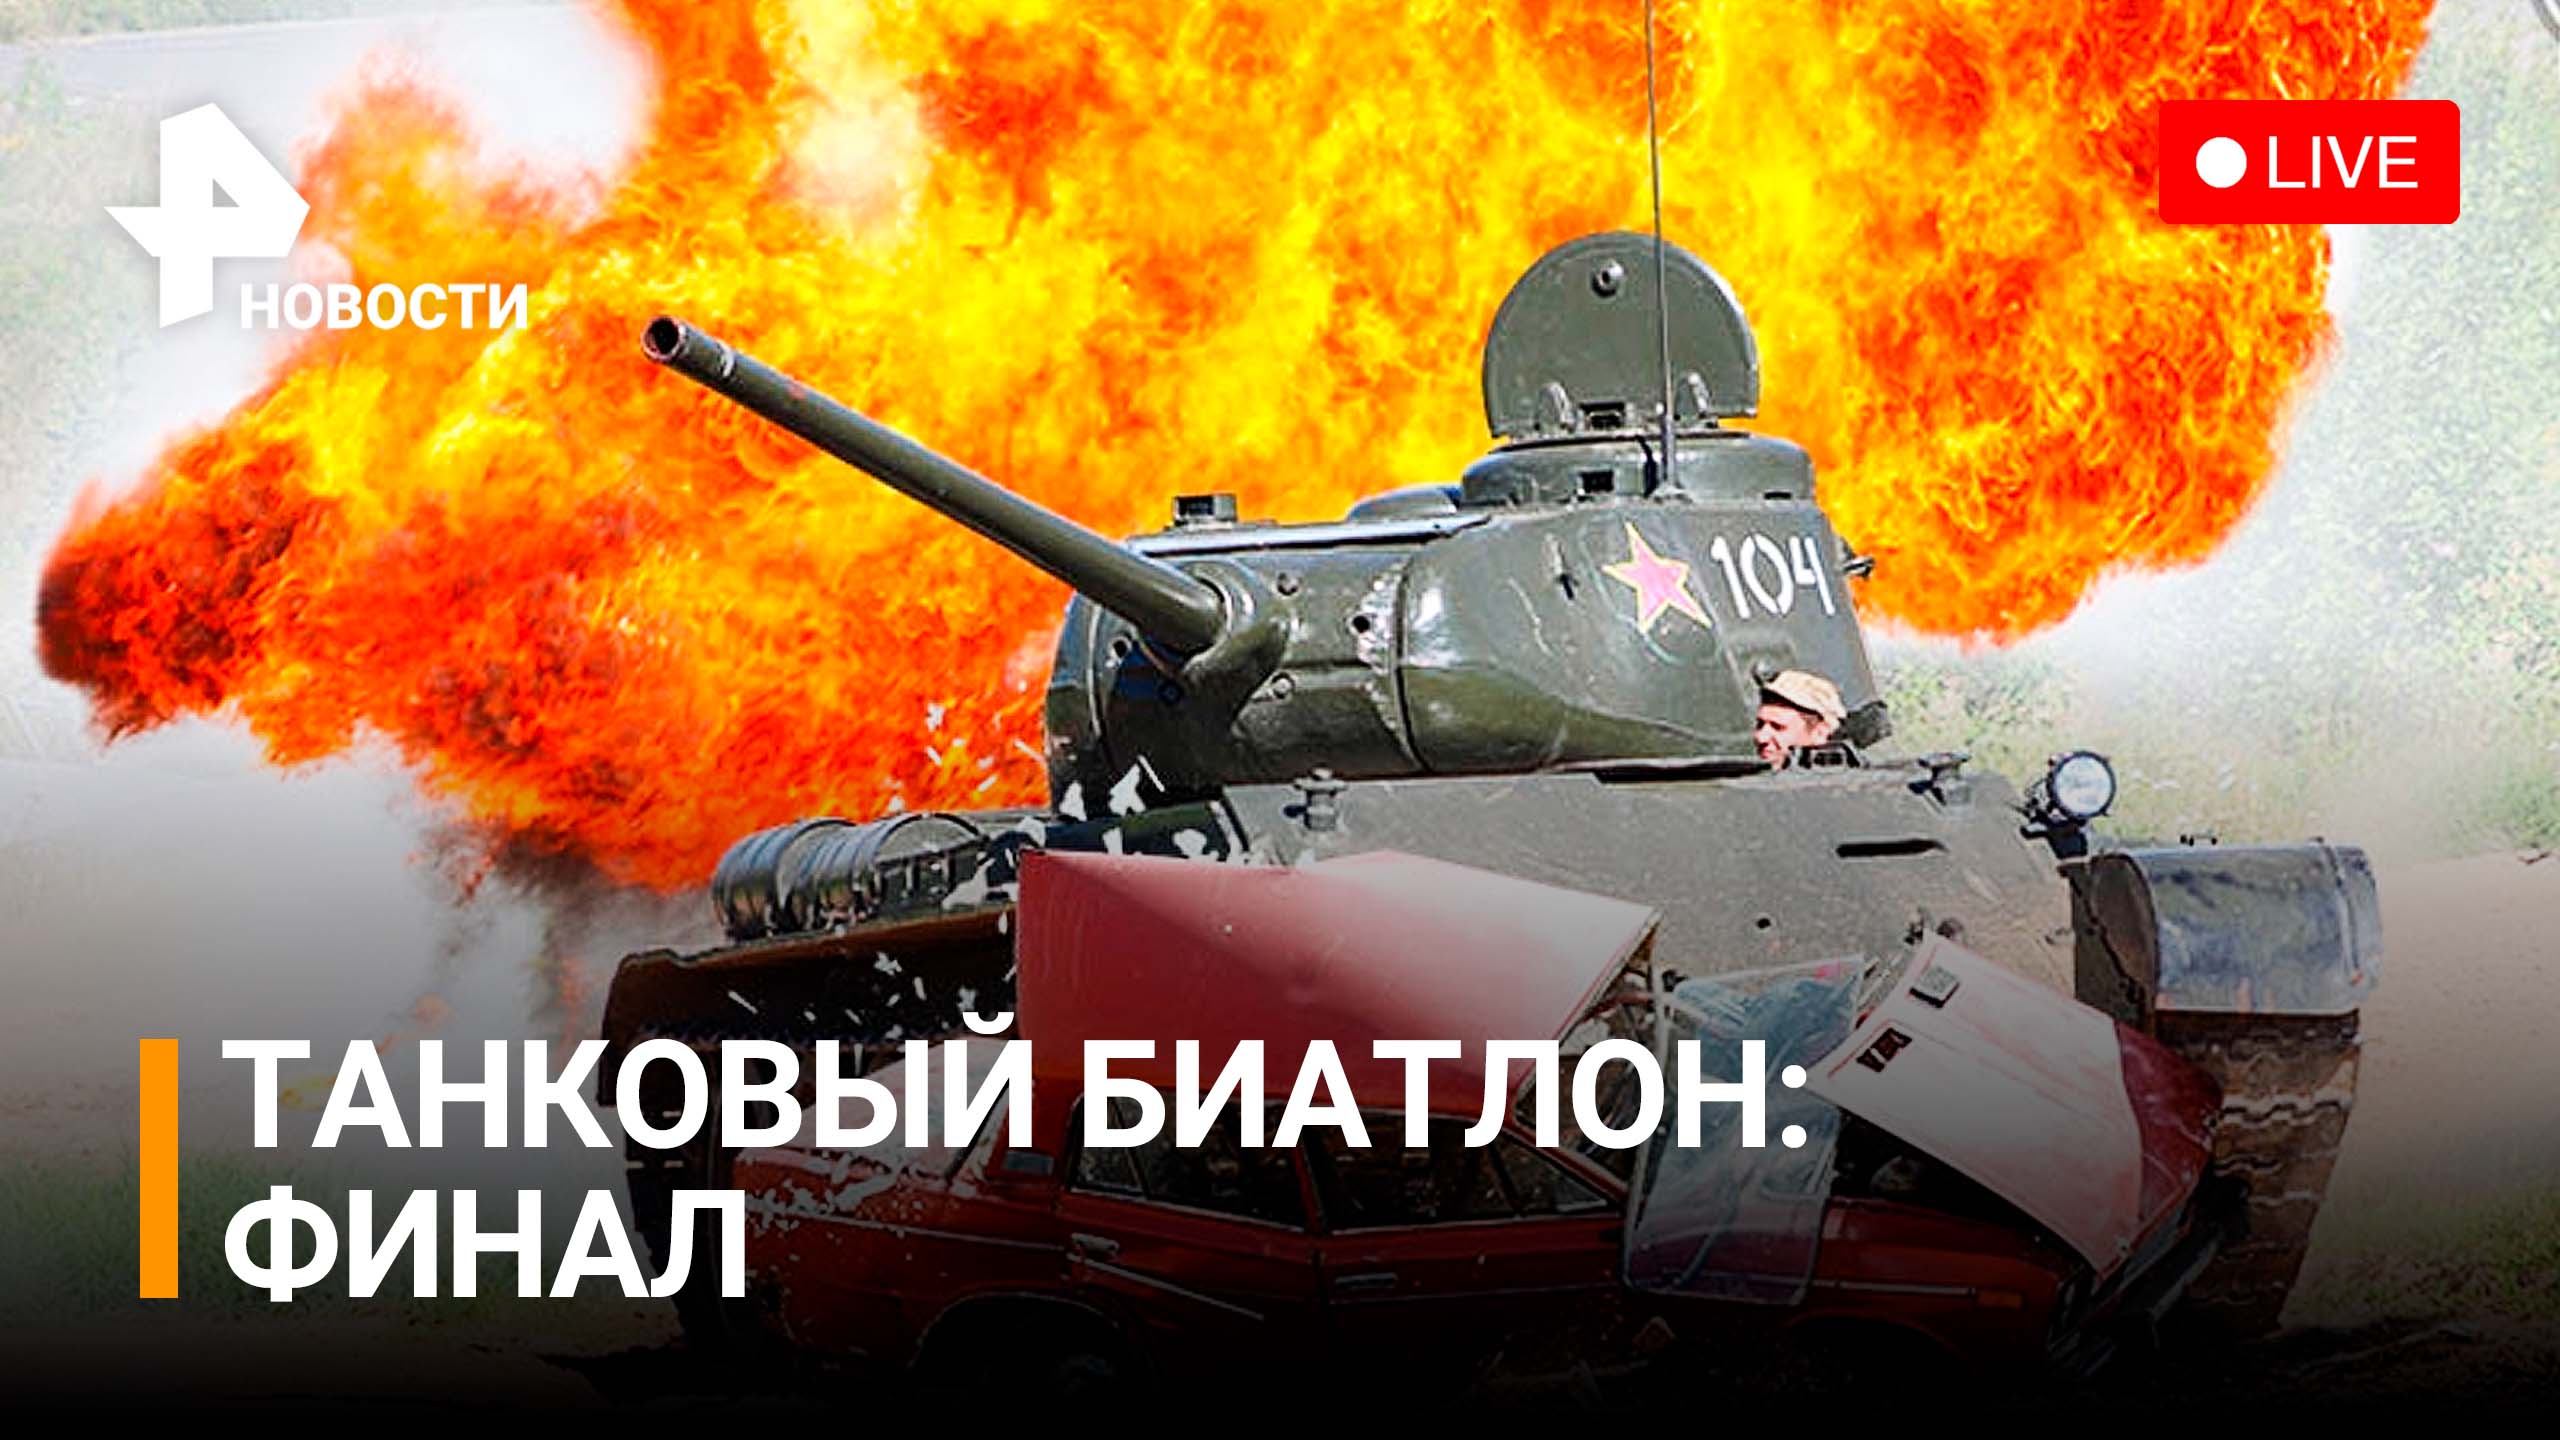 Финал десятых международных состязаний танковых экипажей "Танковый биатлон". Прямая трансляция